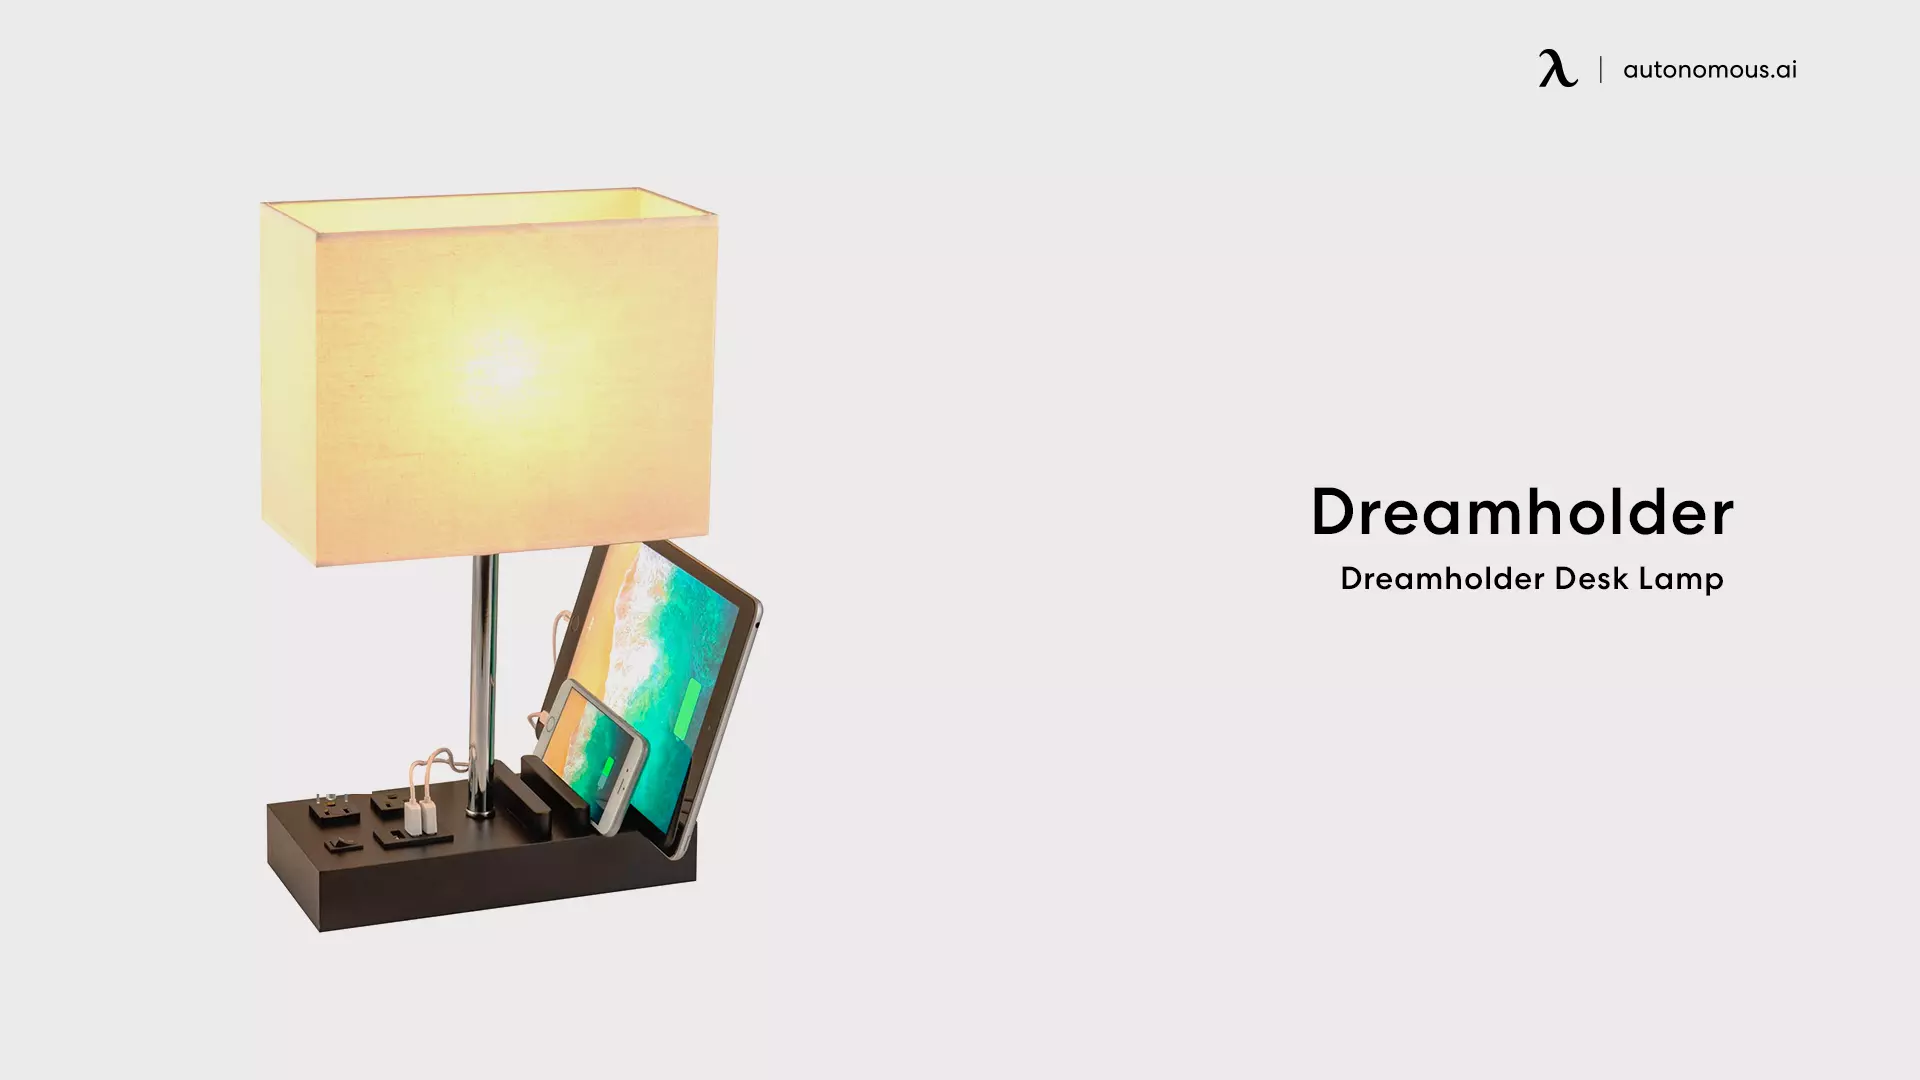 Dreamholder Desk Lamp - cool desk lamps